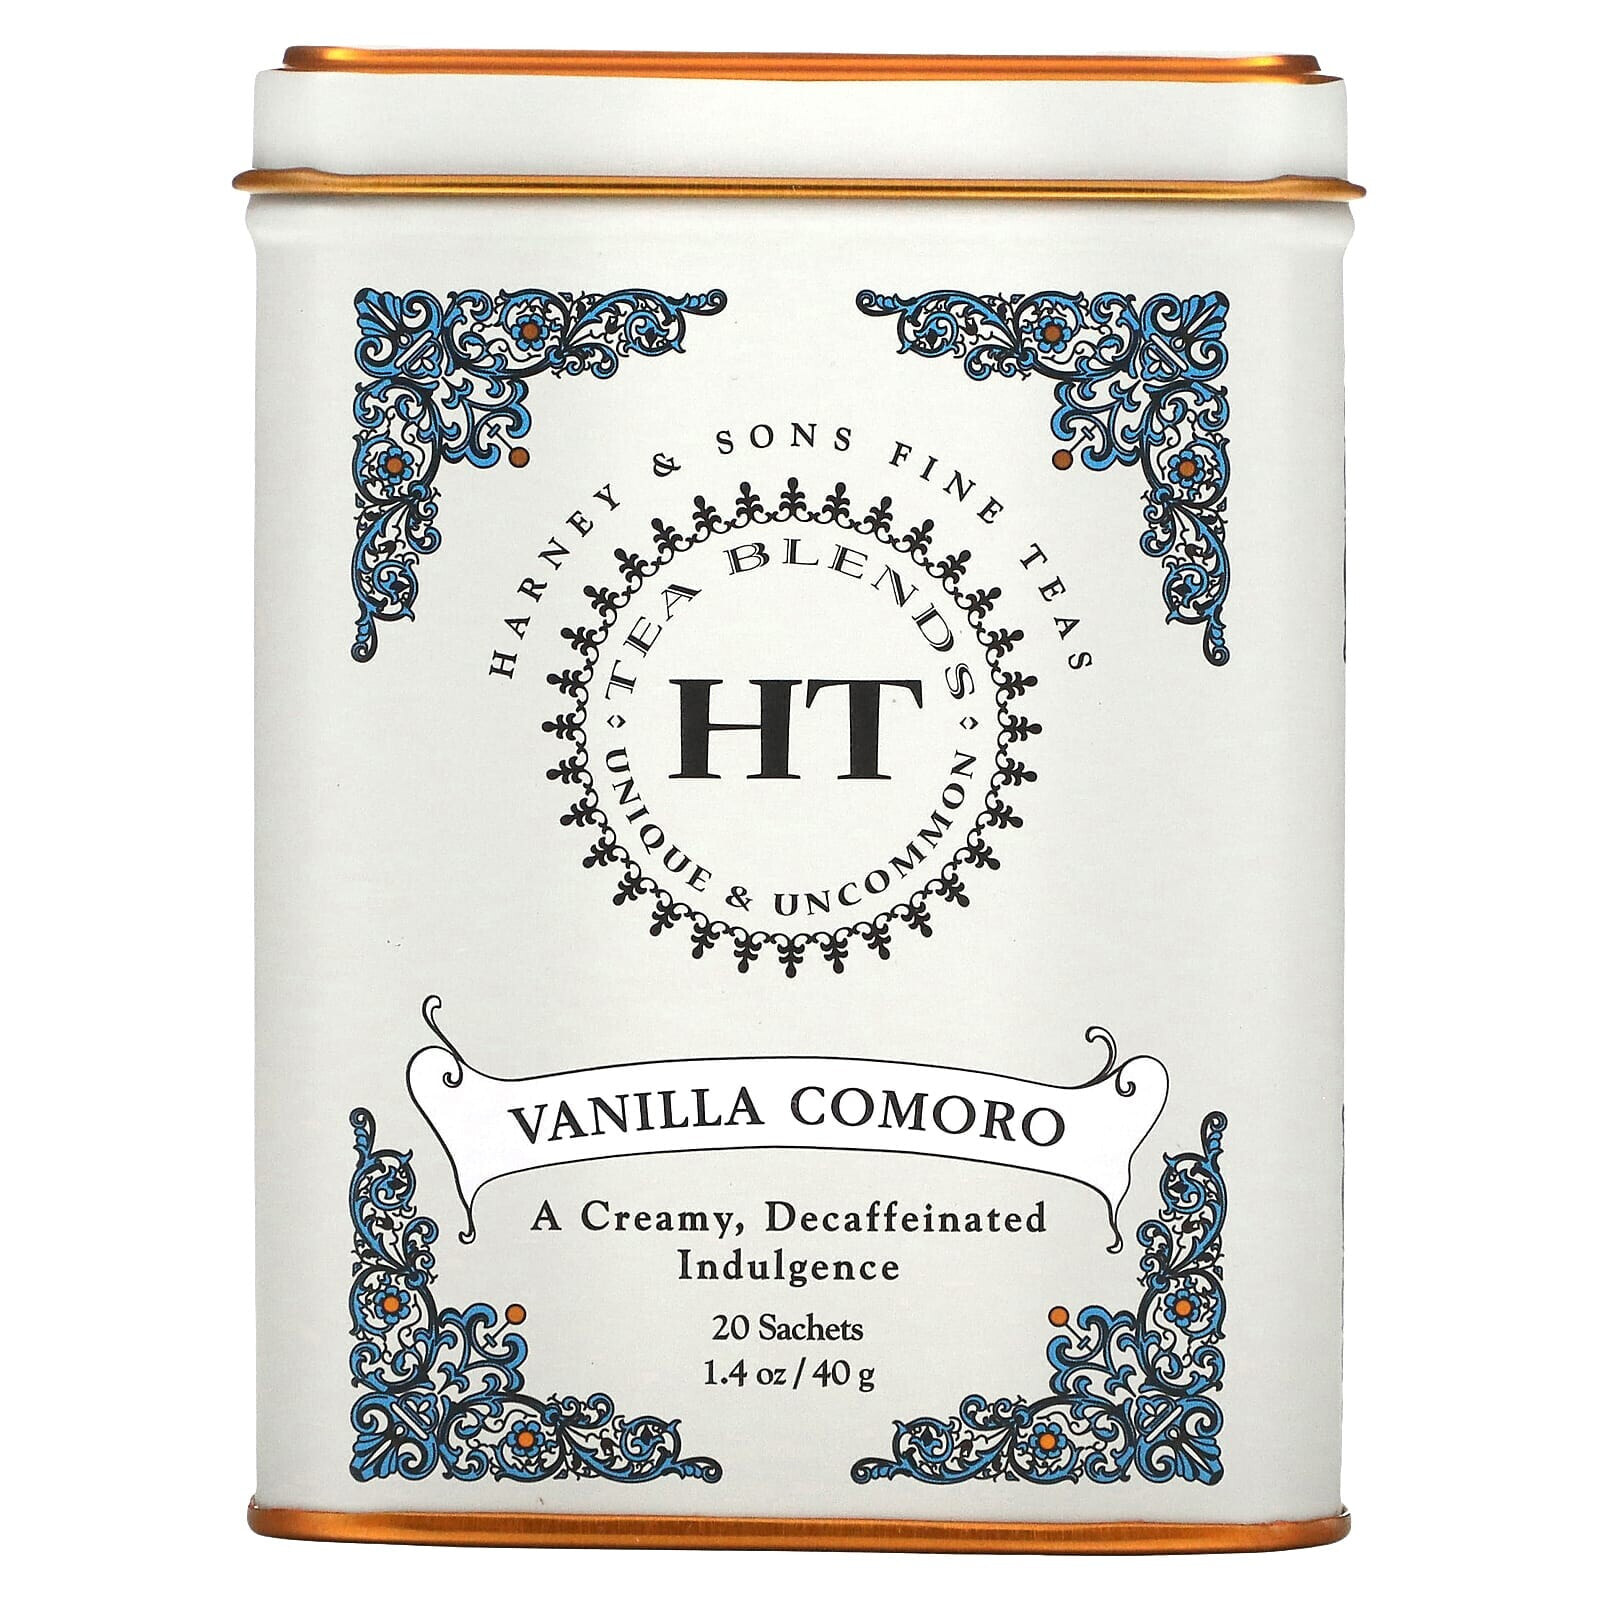 Harney & Sons, HT Tea Blend, чай со вкусом коморской ванили, 20 чайных саше, 40 г (1,4 унции)